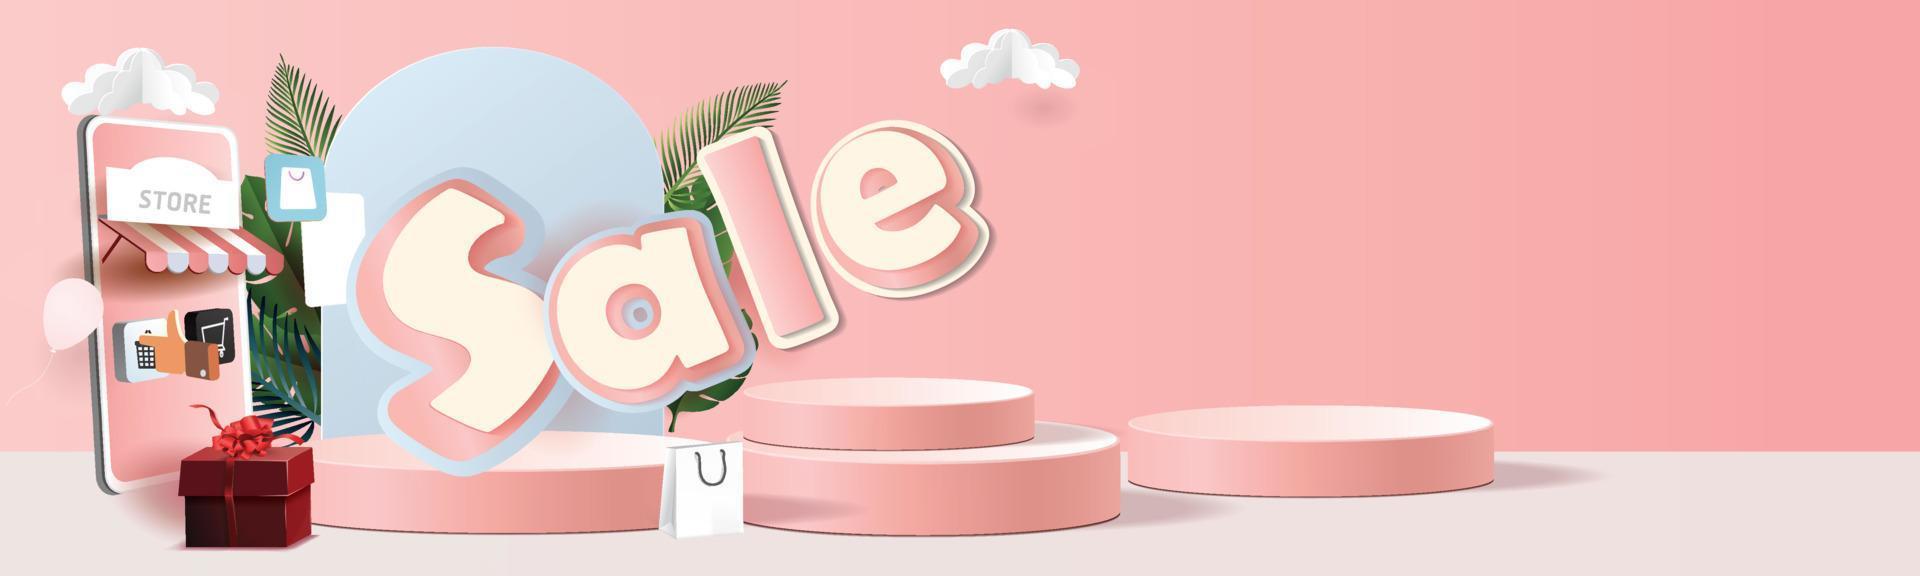 papieren kunst online winkelen op smartphone en nieuwe koop verkoop promotie roze achtergrondgeluid voor banner markt e-commerce vrouwen concept. vector